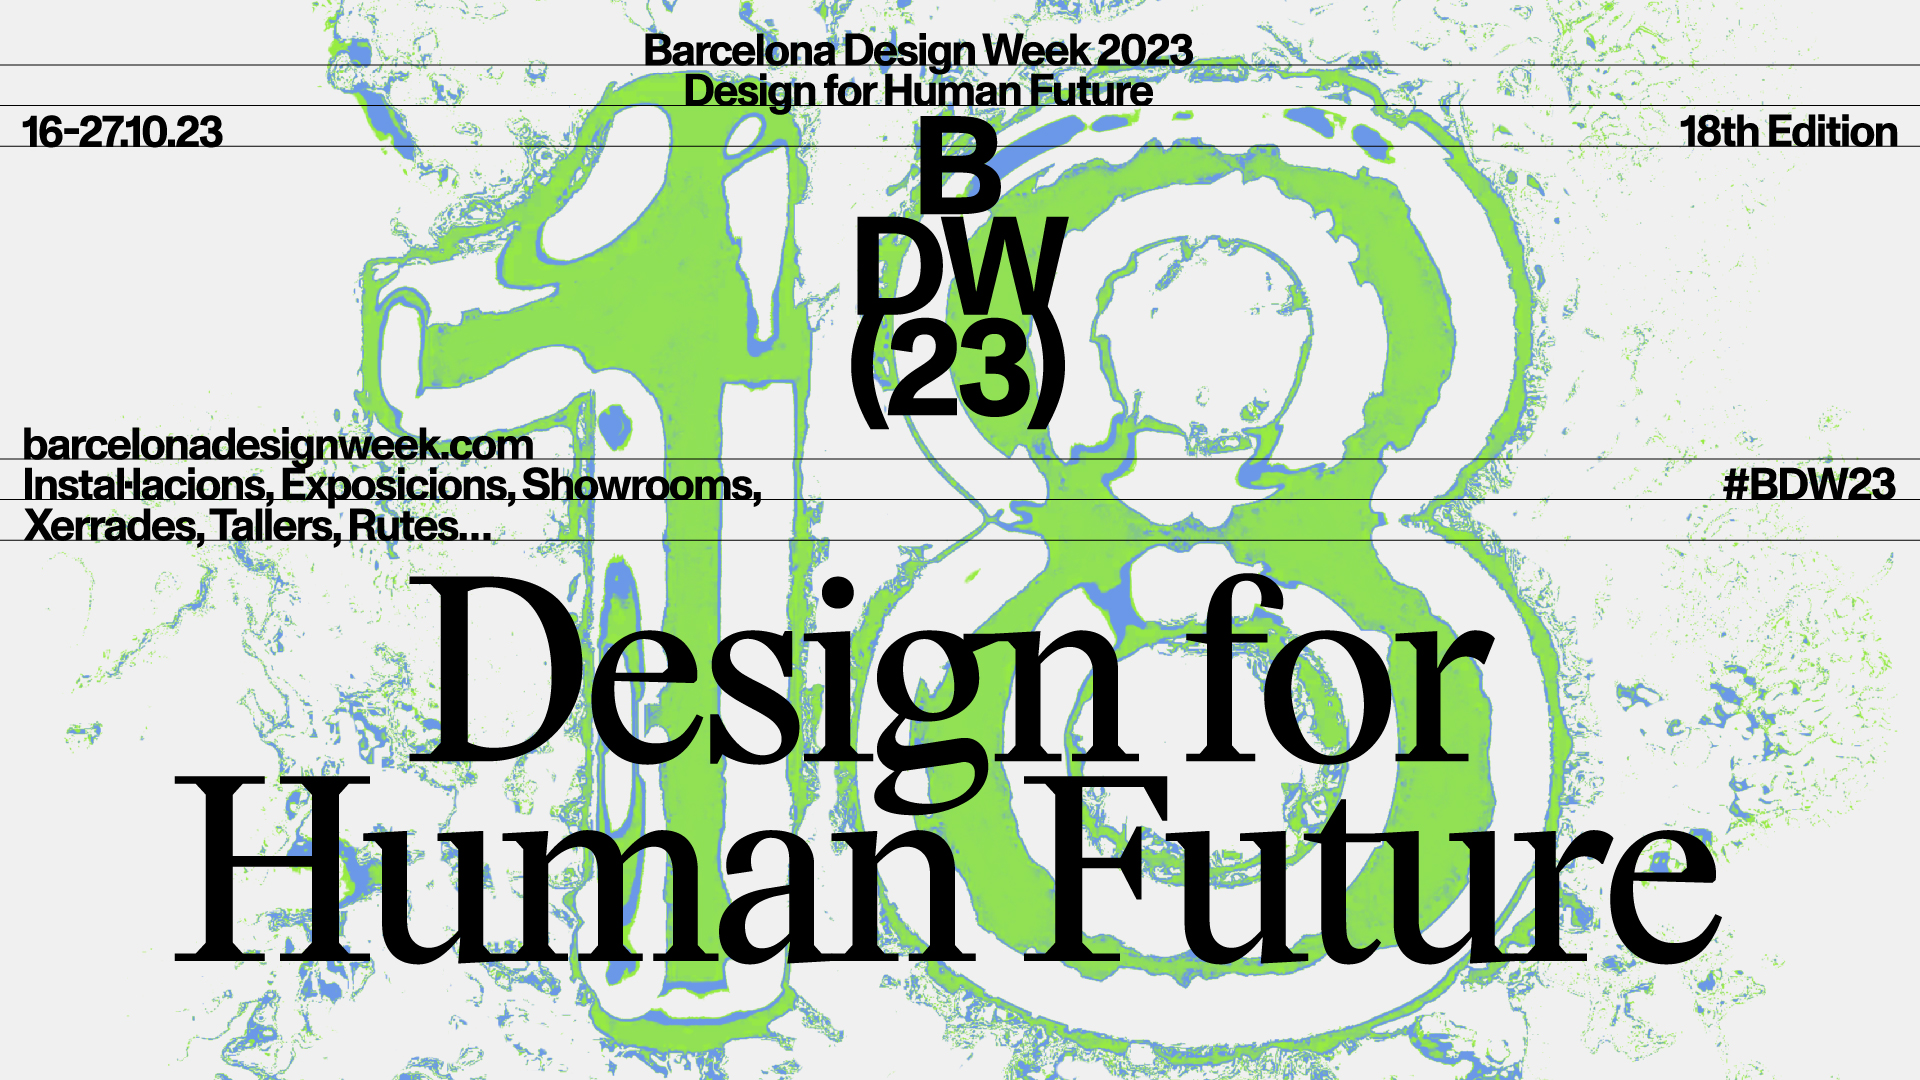 La Barcelona Design Week vuelve del 16 al 27 de octubre | Barcelona centro de Diseño